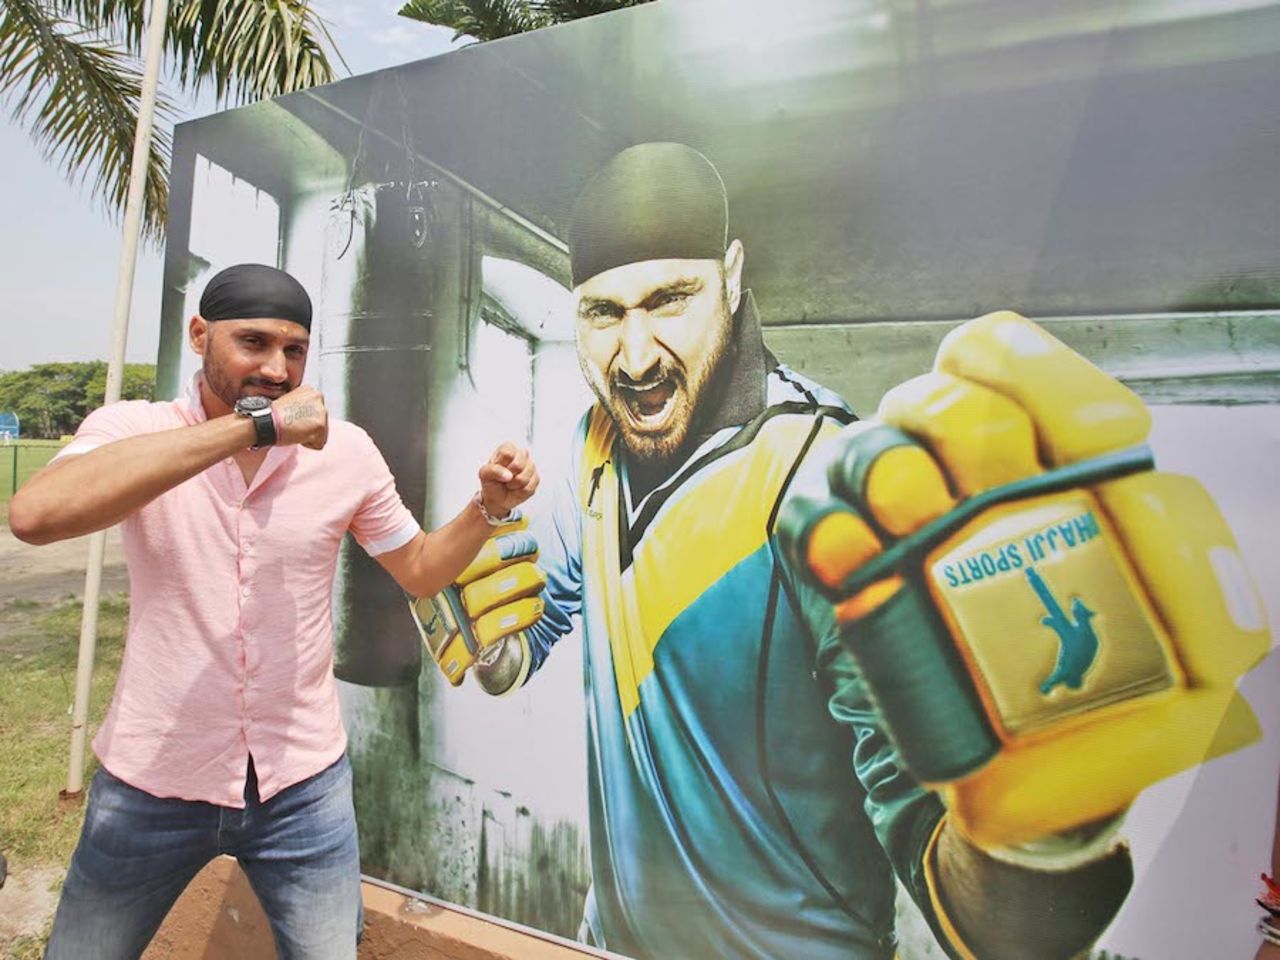 Harbhajan Singh poses at the launch of his cricket academy, Kolkata, April 8, 2015